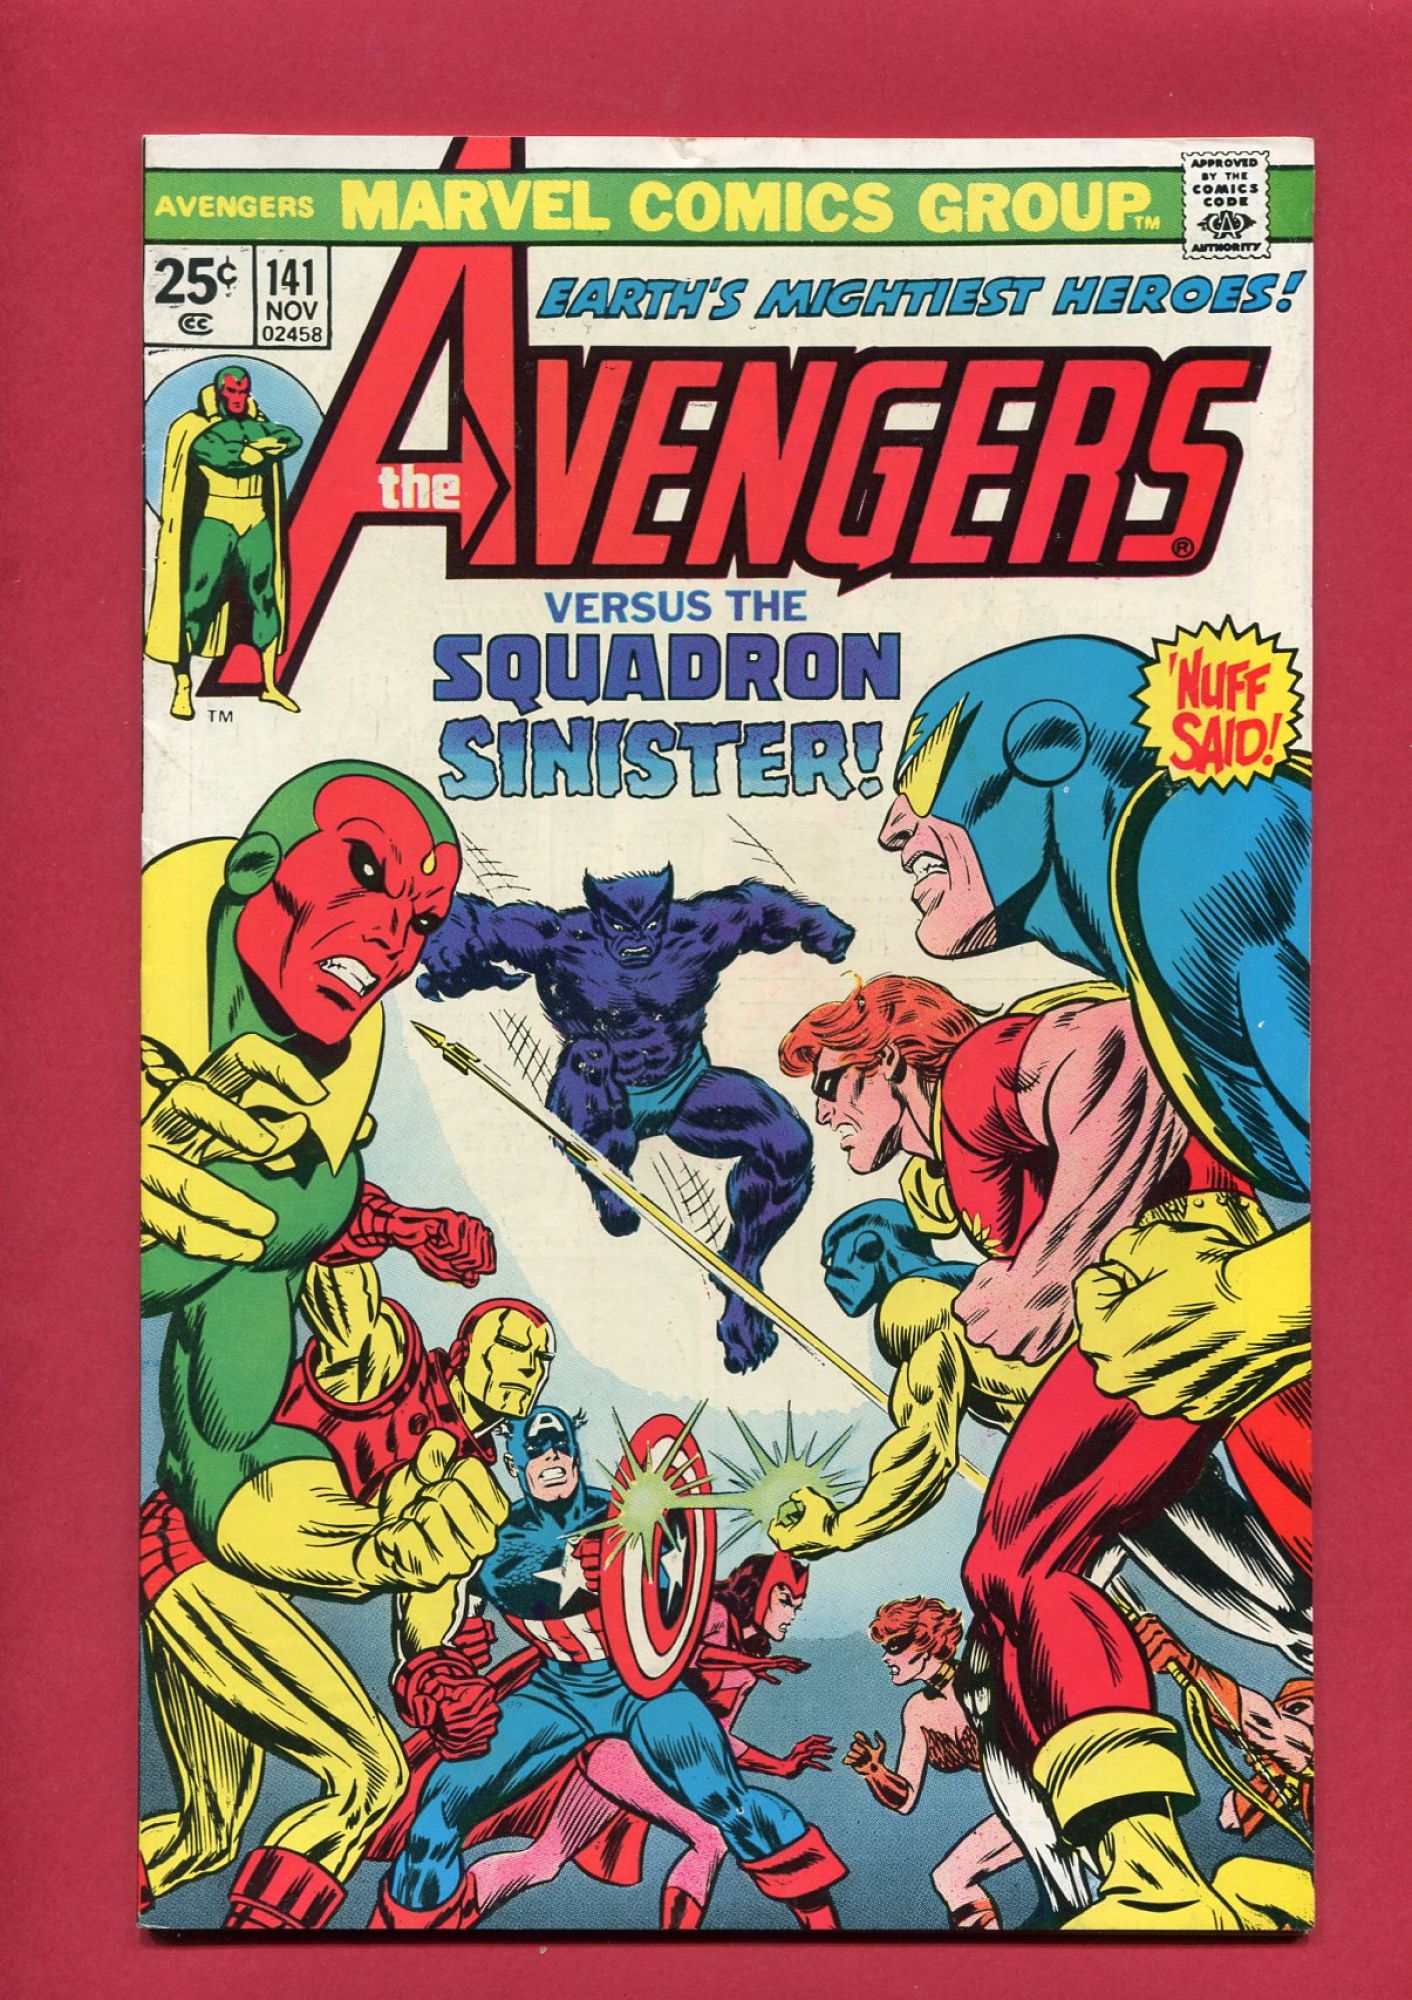 Avengers #141, Nov 1975, 7.0 FN/VF